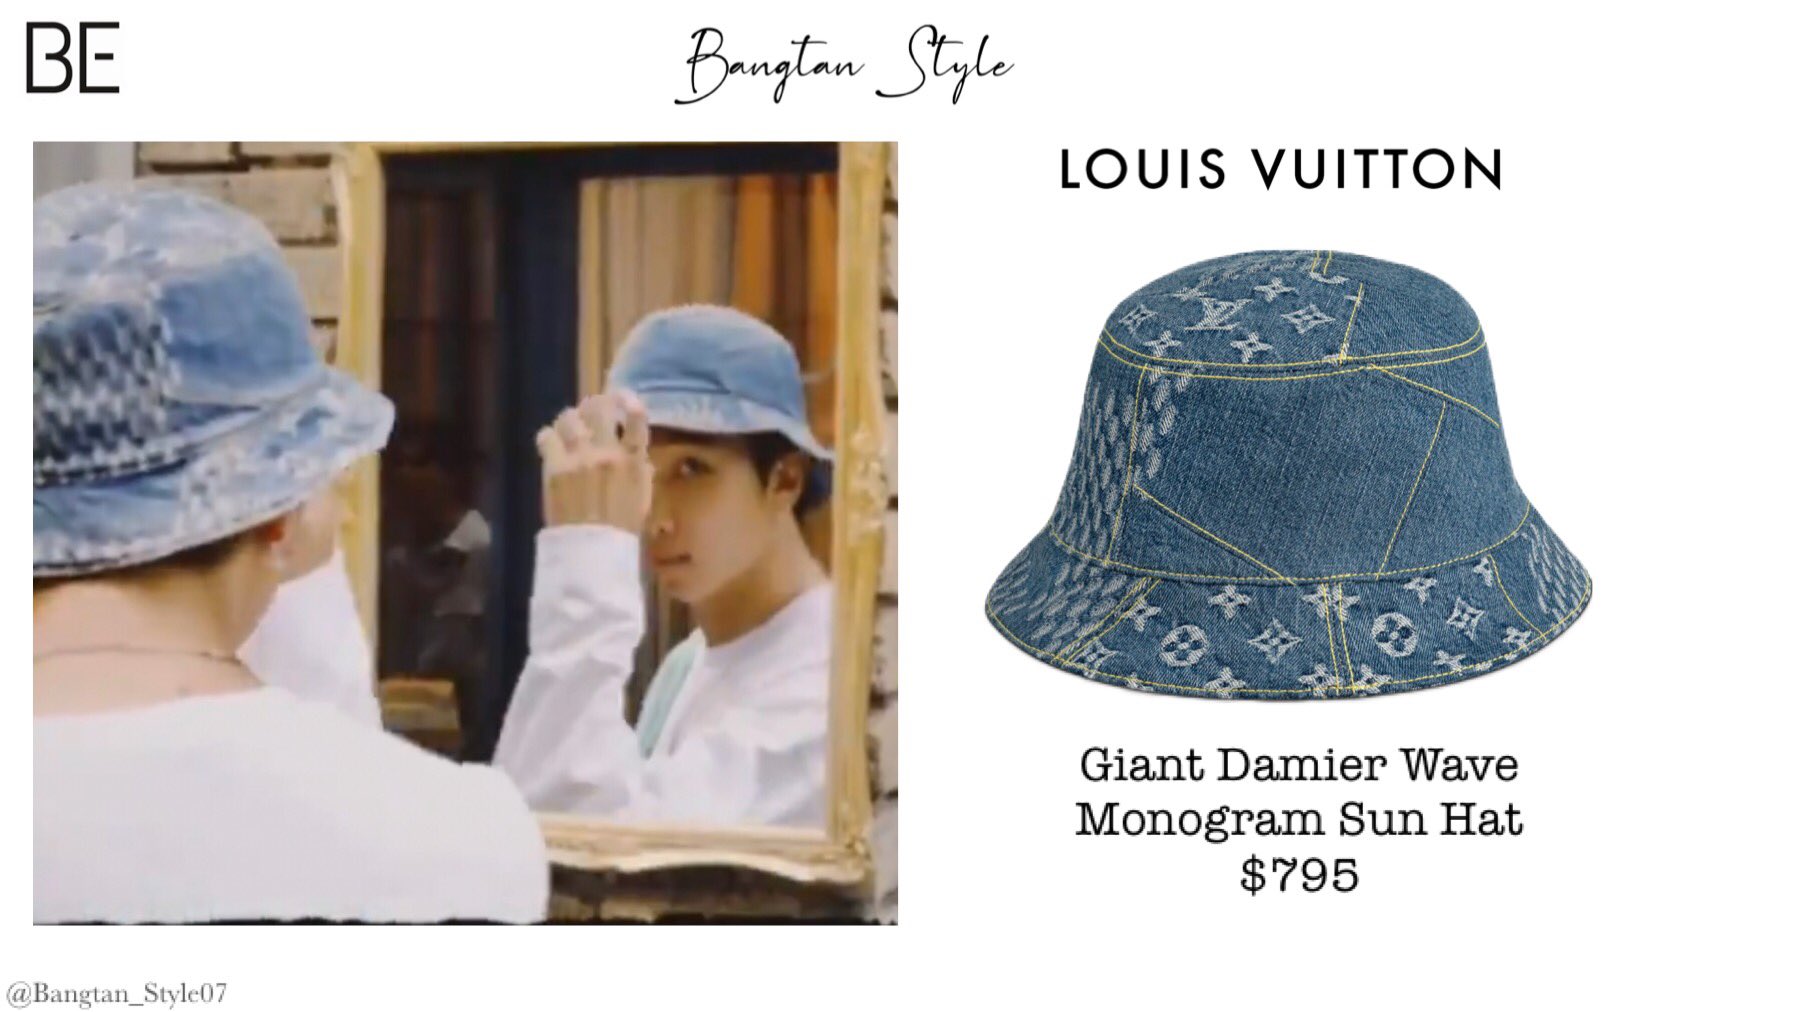 Bangtan Style⁷ (slow) on X: BTS BE CONCEPT CLIP Namjoon wears LOUIS VUITTON  Giant Damier Wave Monogram Sun Hat ($795). #RM #BTS_BE @BTS_twt   / X